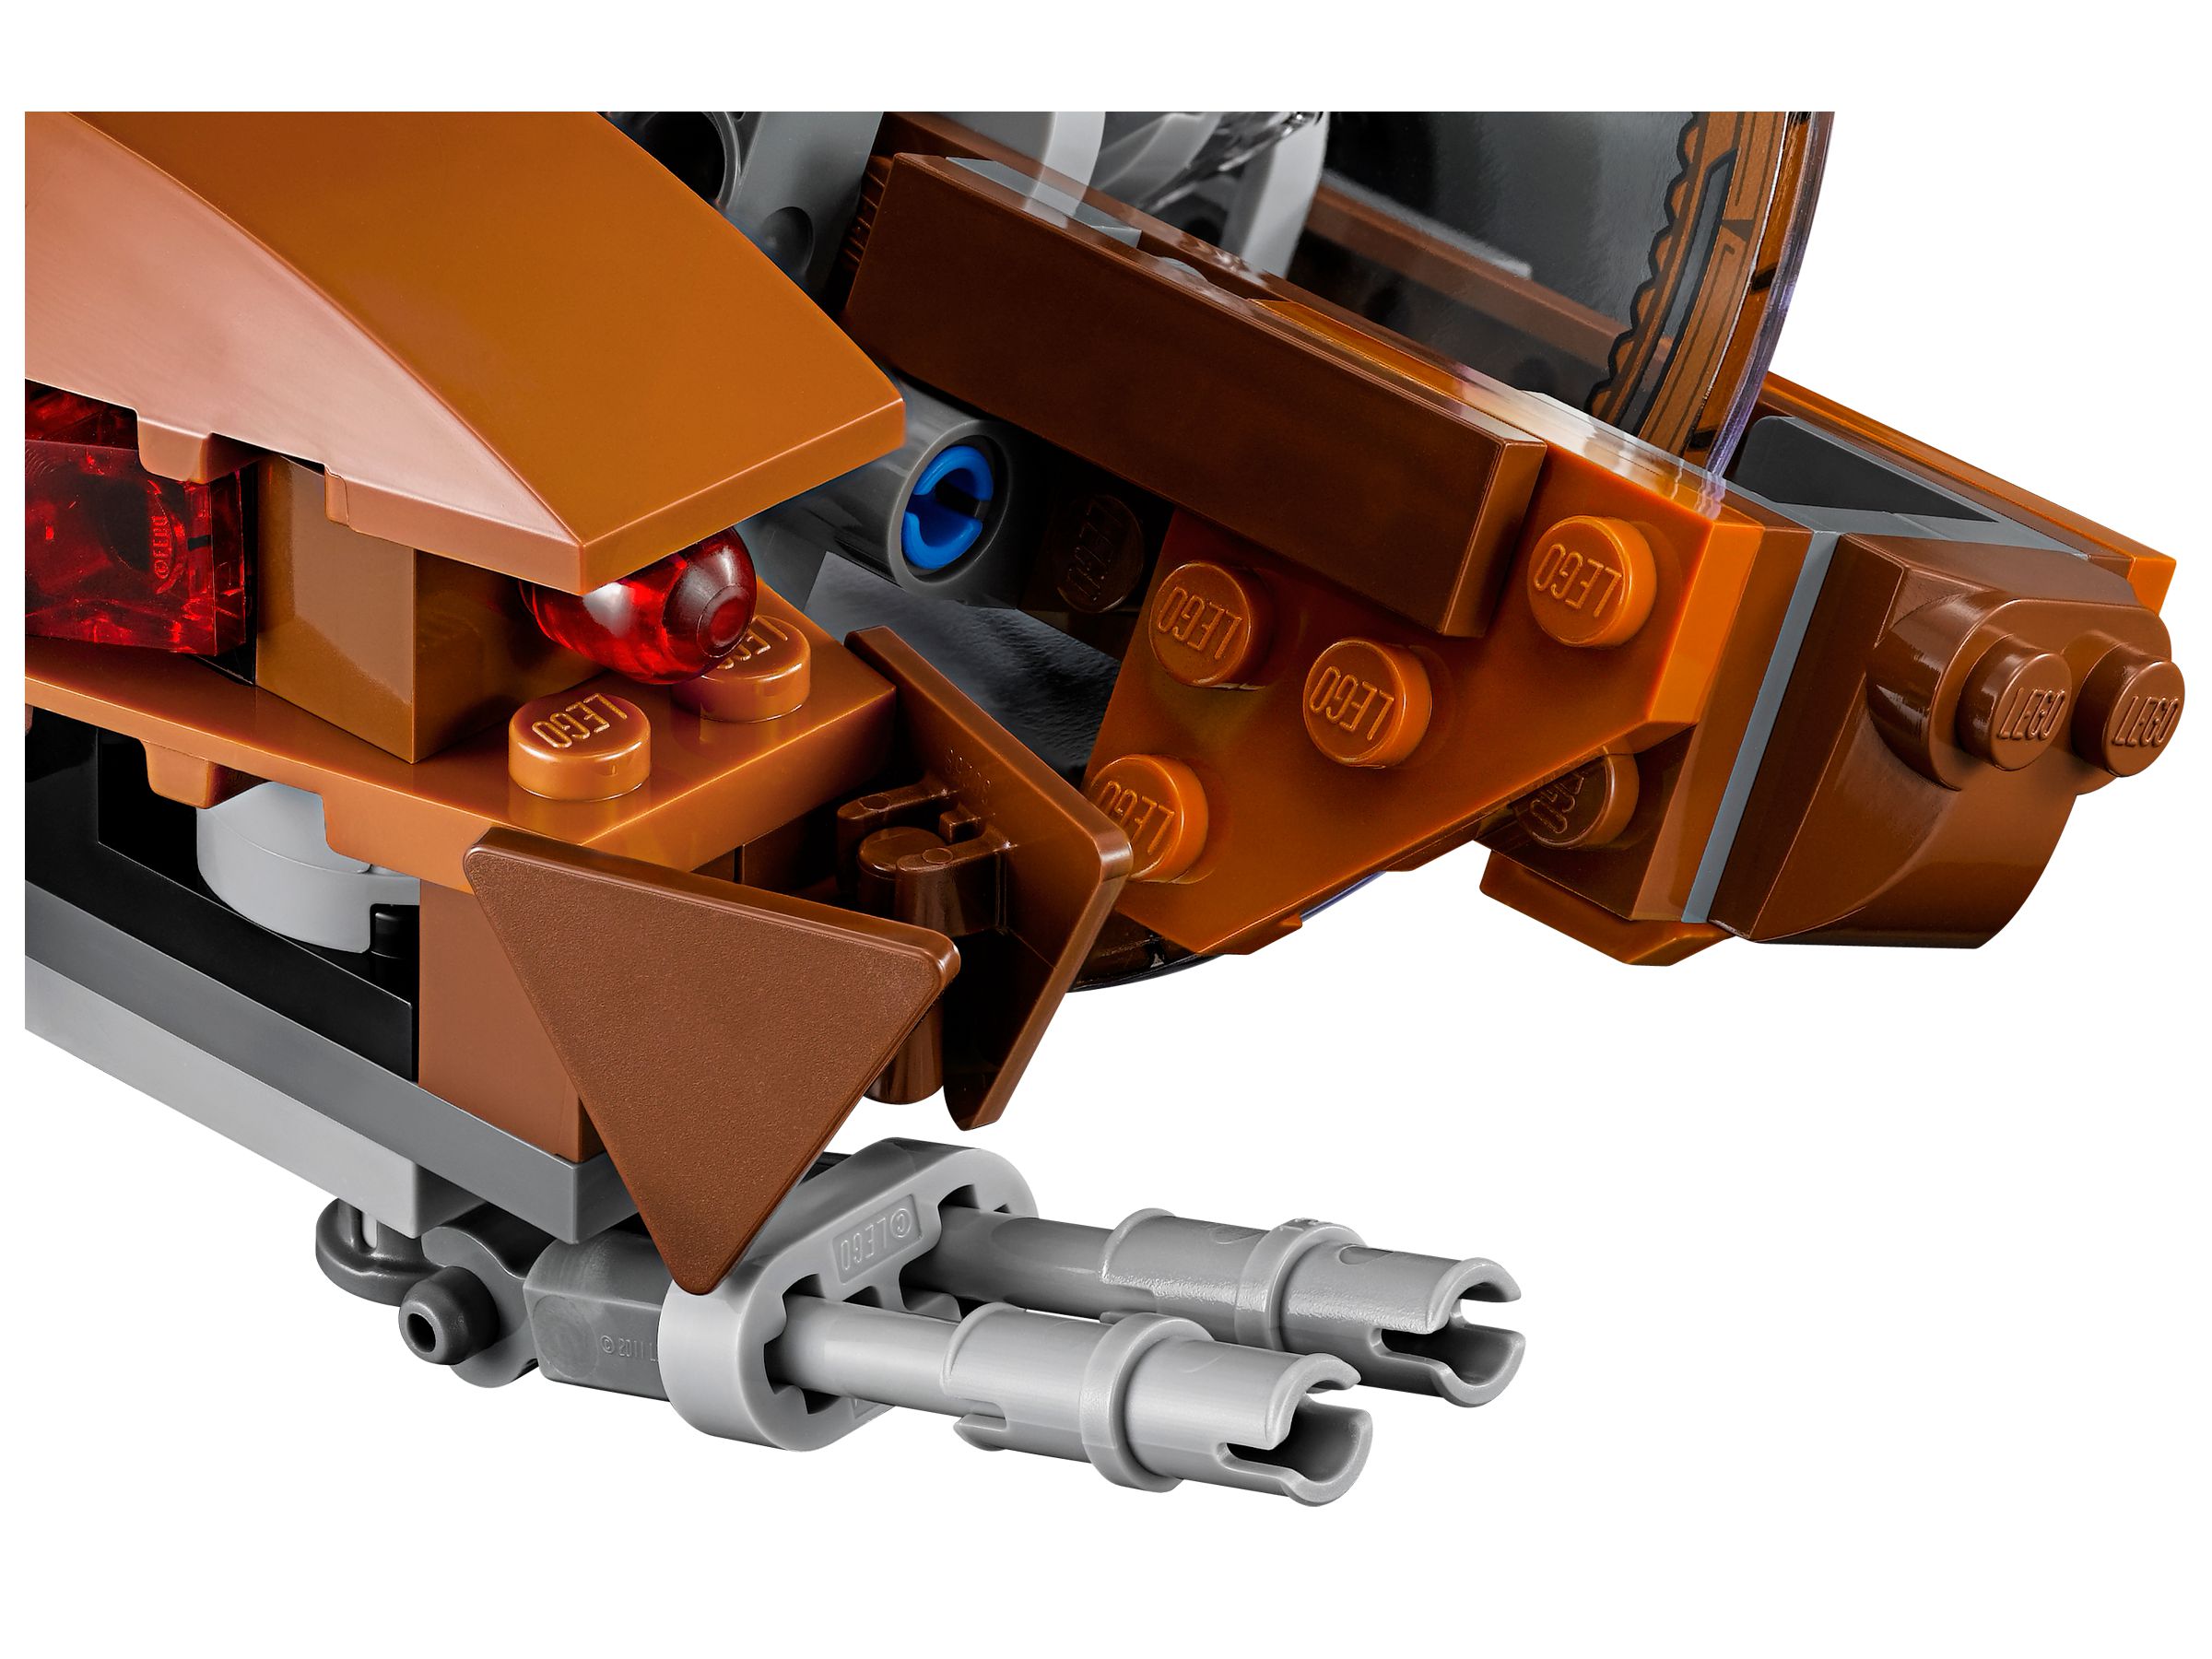 LEGO Star Wars 75085 Hailfire Droid™ LEGO_75085_alt5.jpg